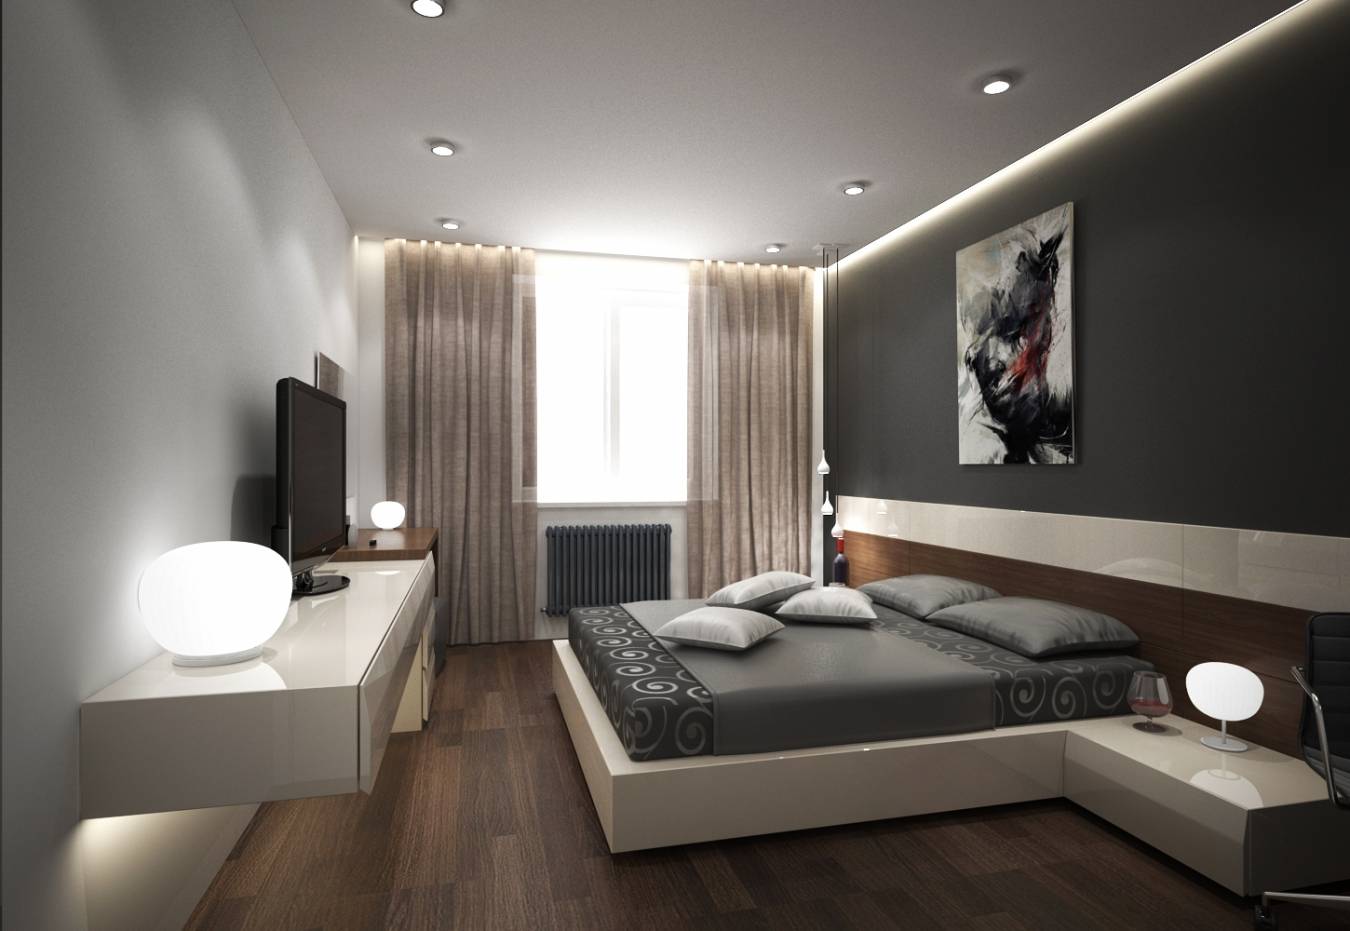 Натяжные потолки для спальни: фото идеи красивого дизайна интерьера